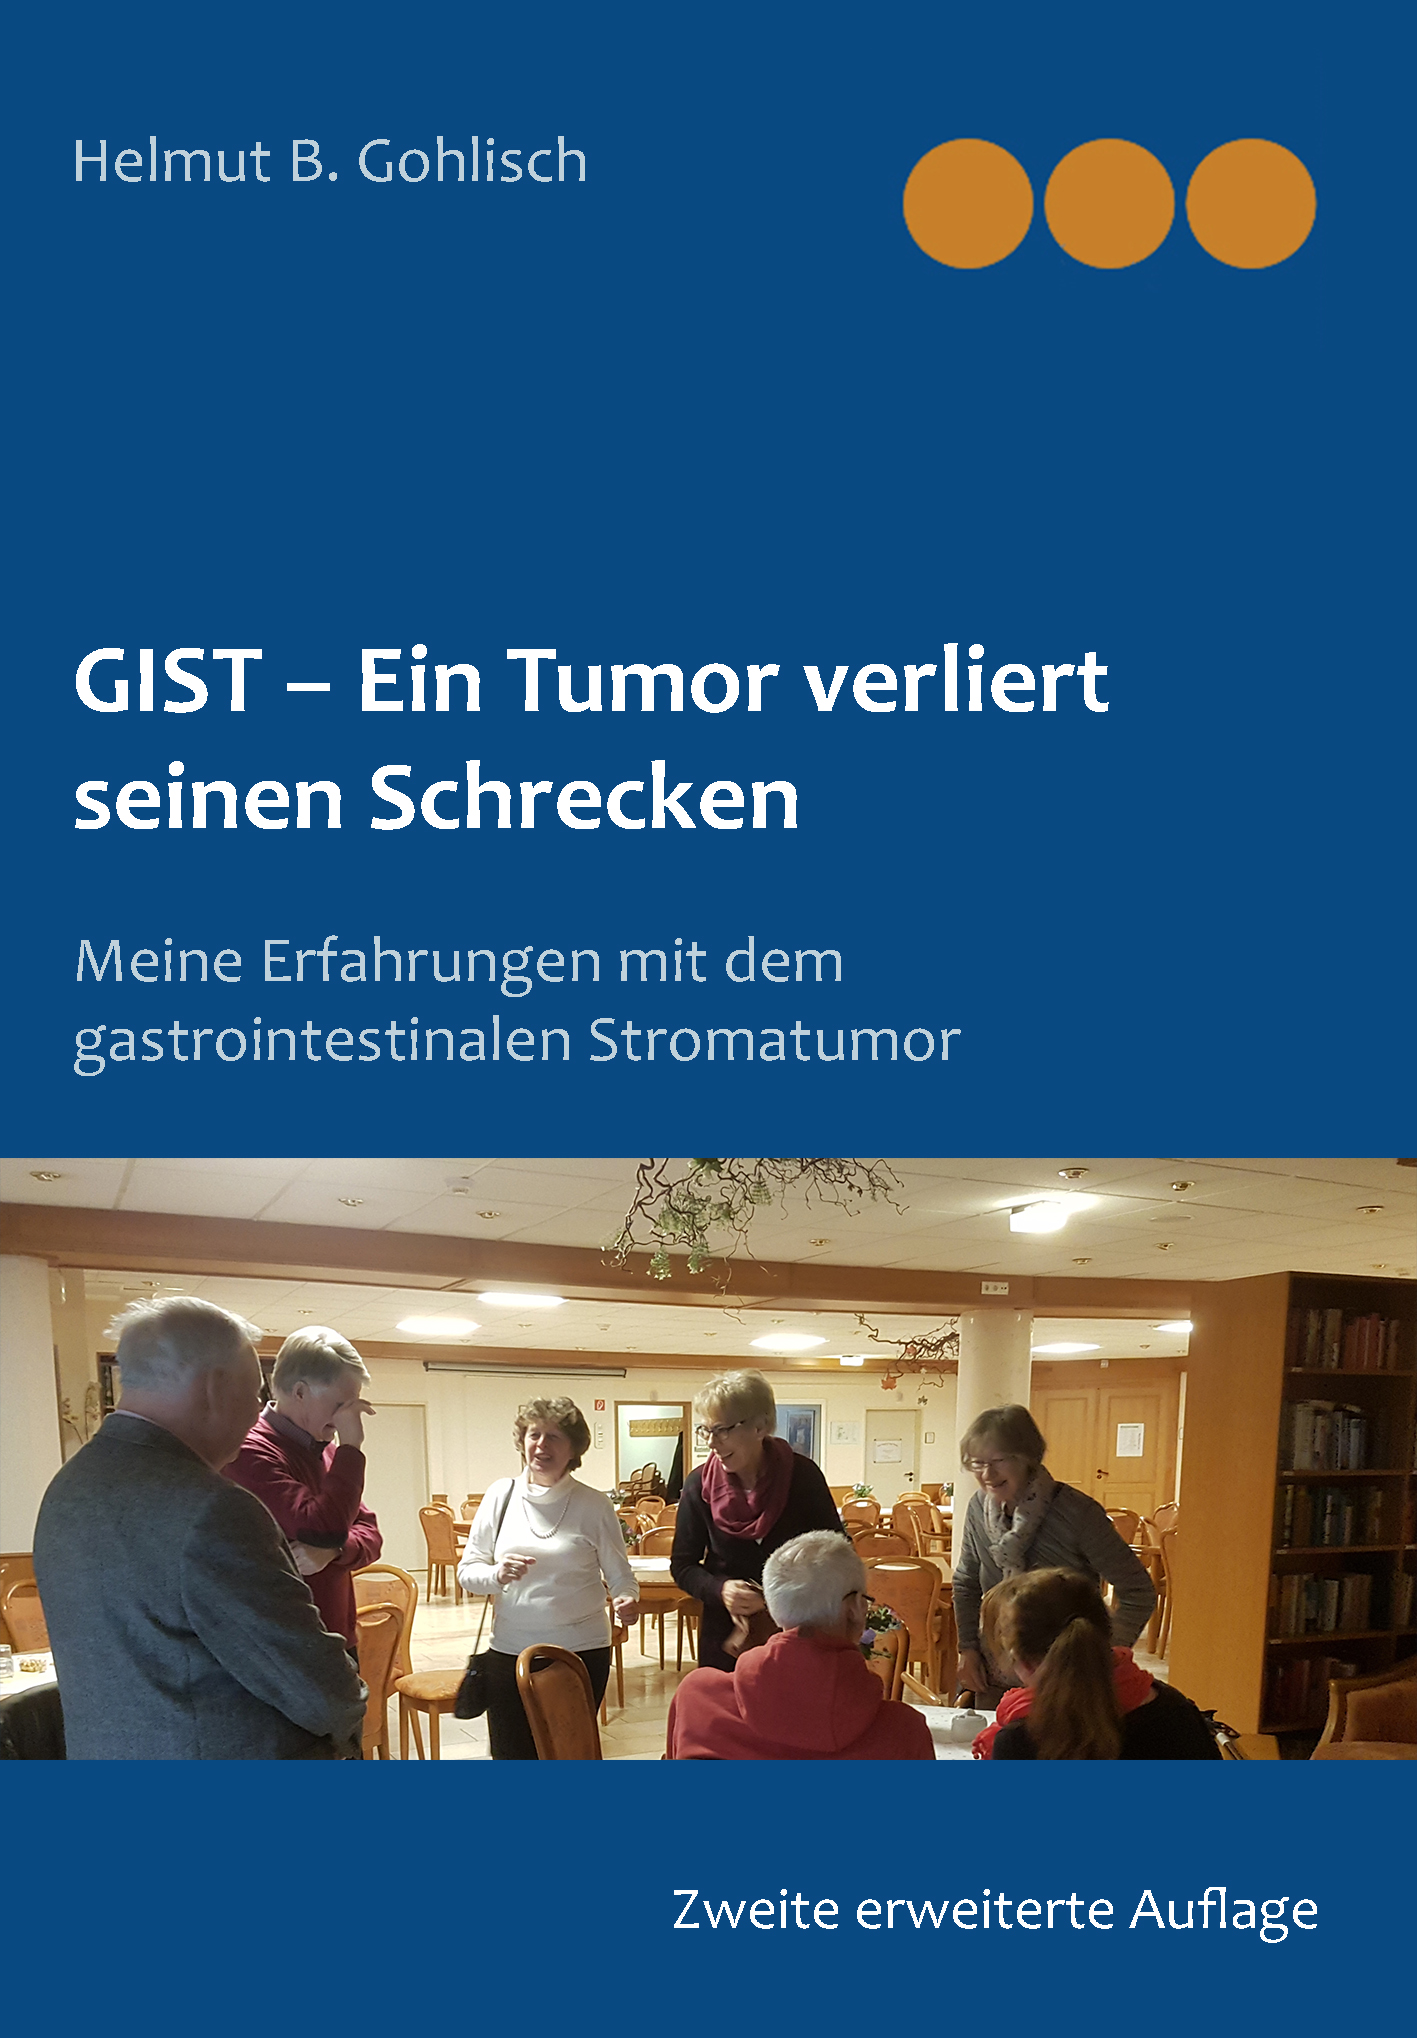 GIST Helmut gist tumor